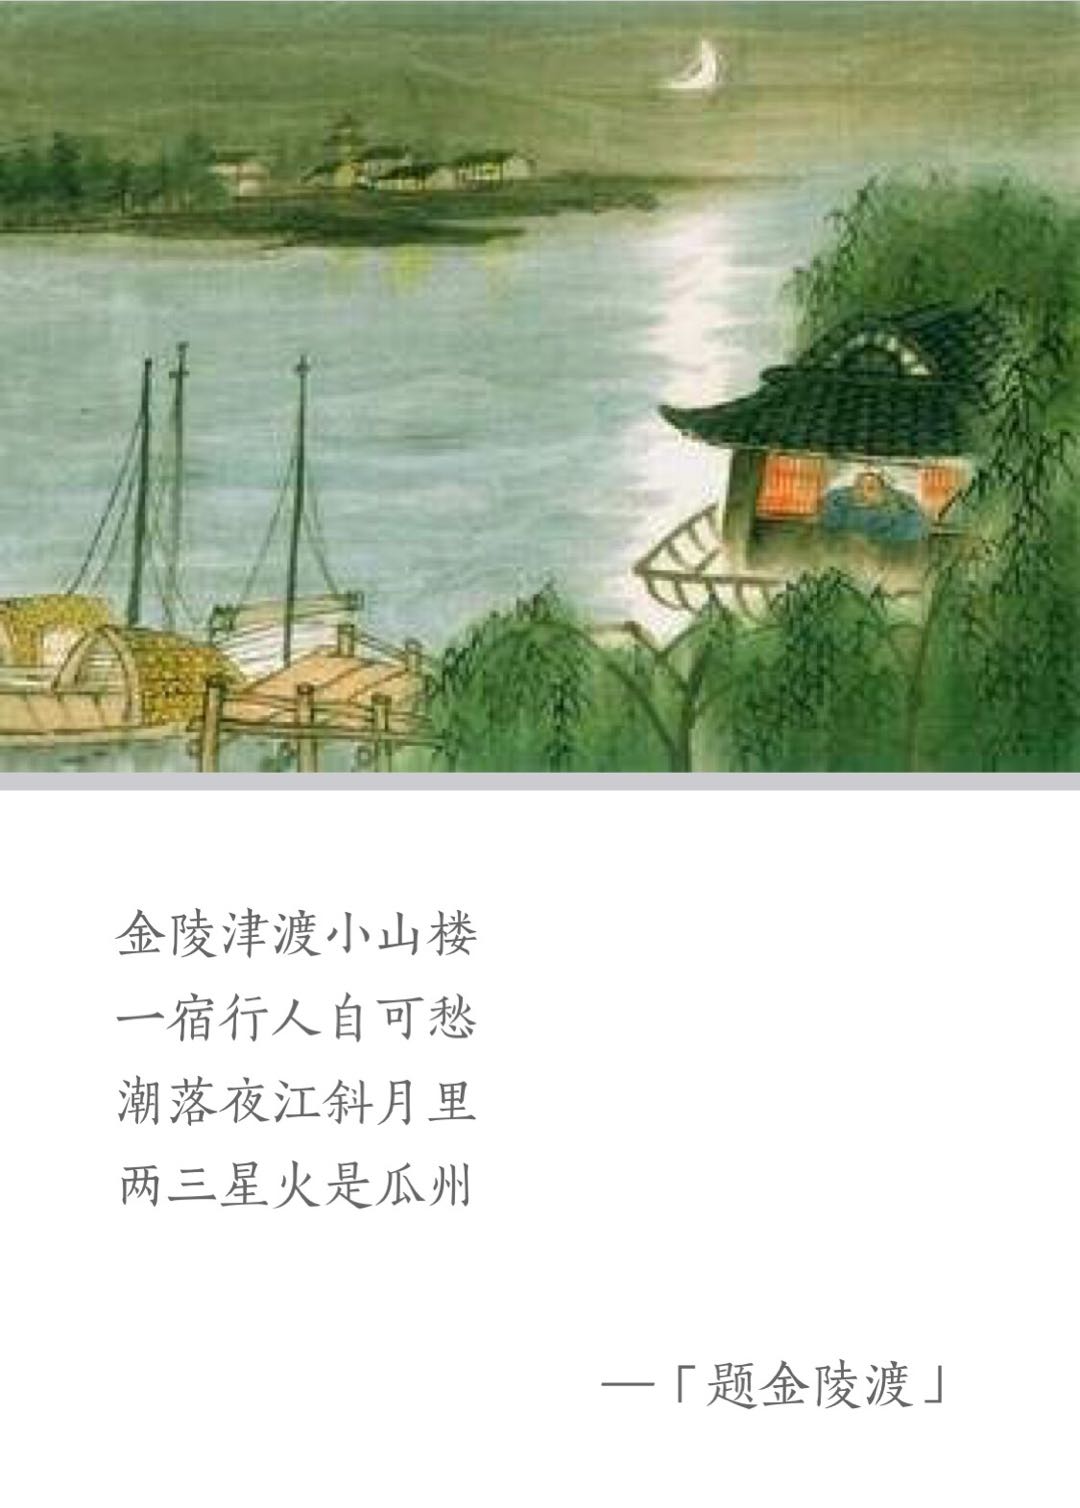 题金陵渡古诗文翻译，唐代张祜的题金陵渡赏析和解释